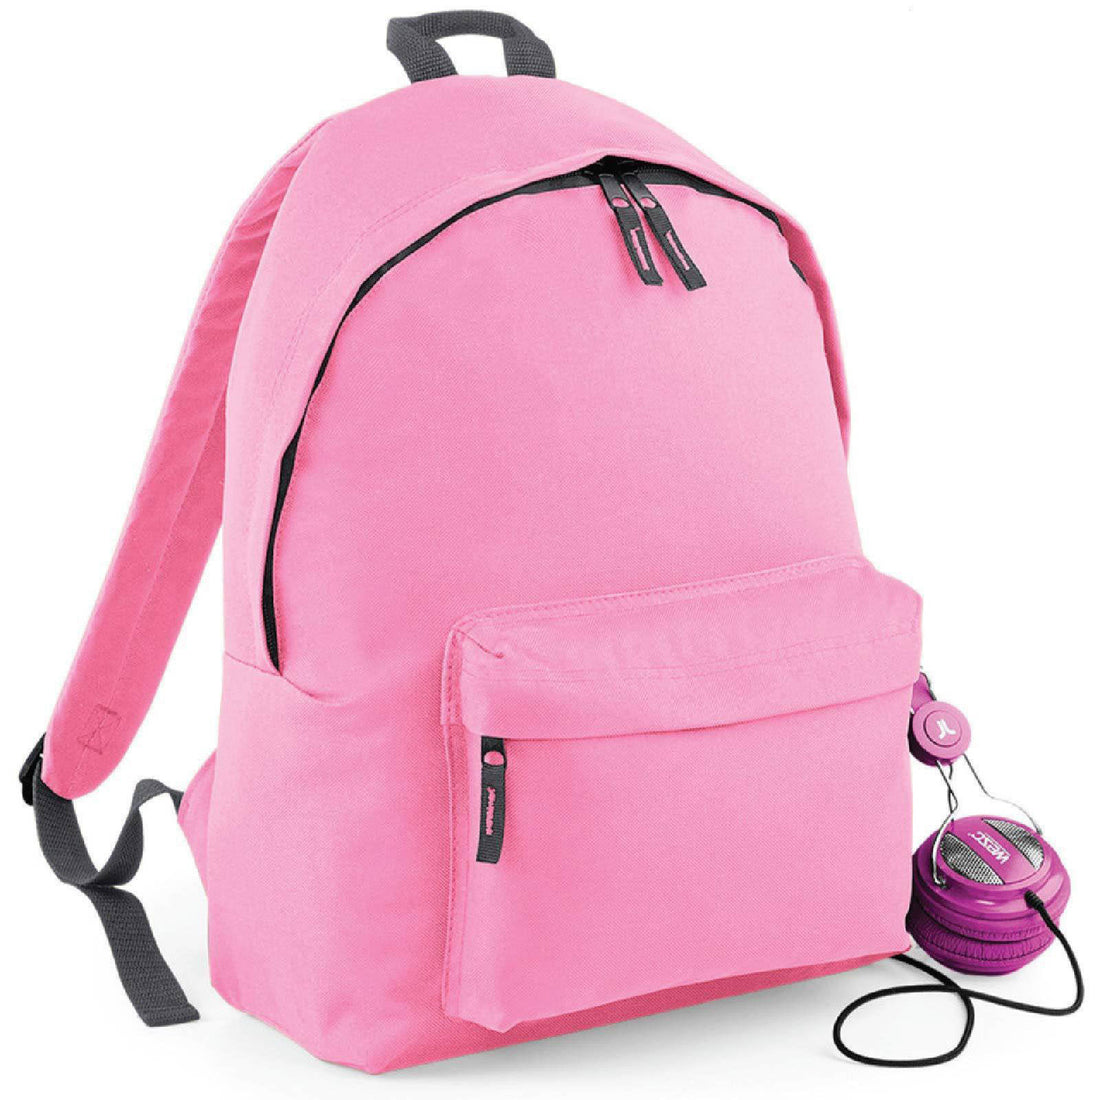 Rucksack Backpack School Bag Men Women